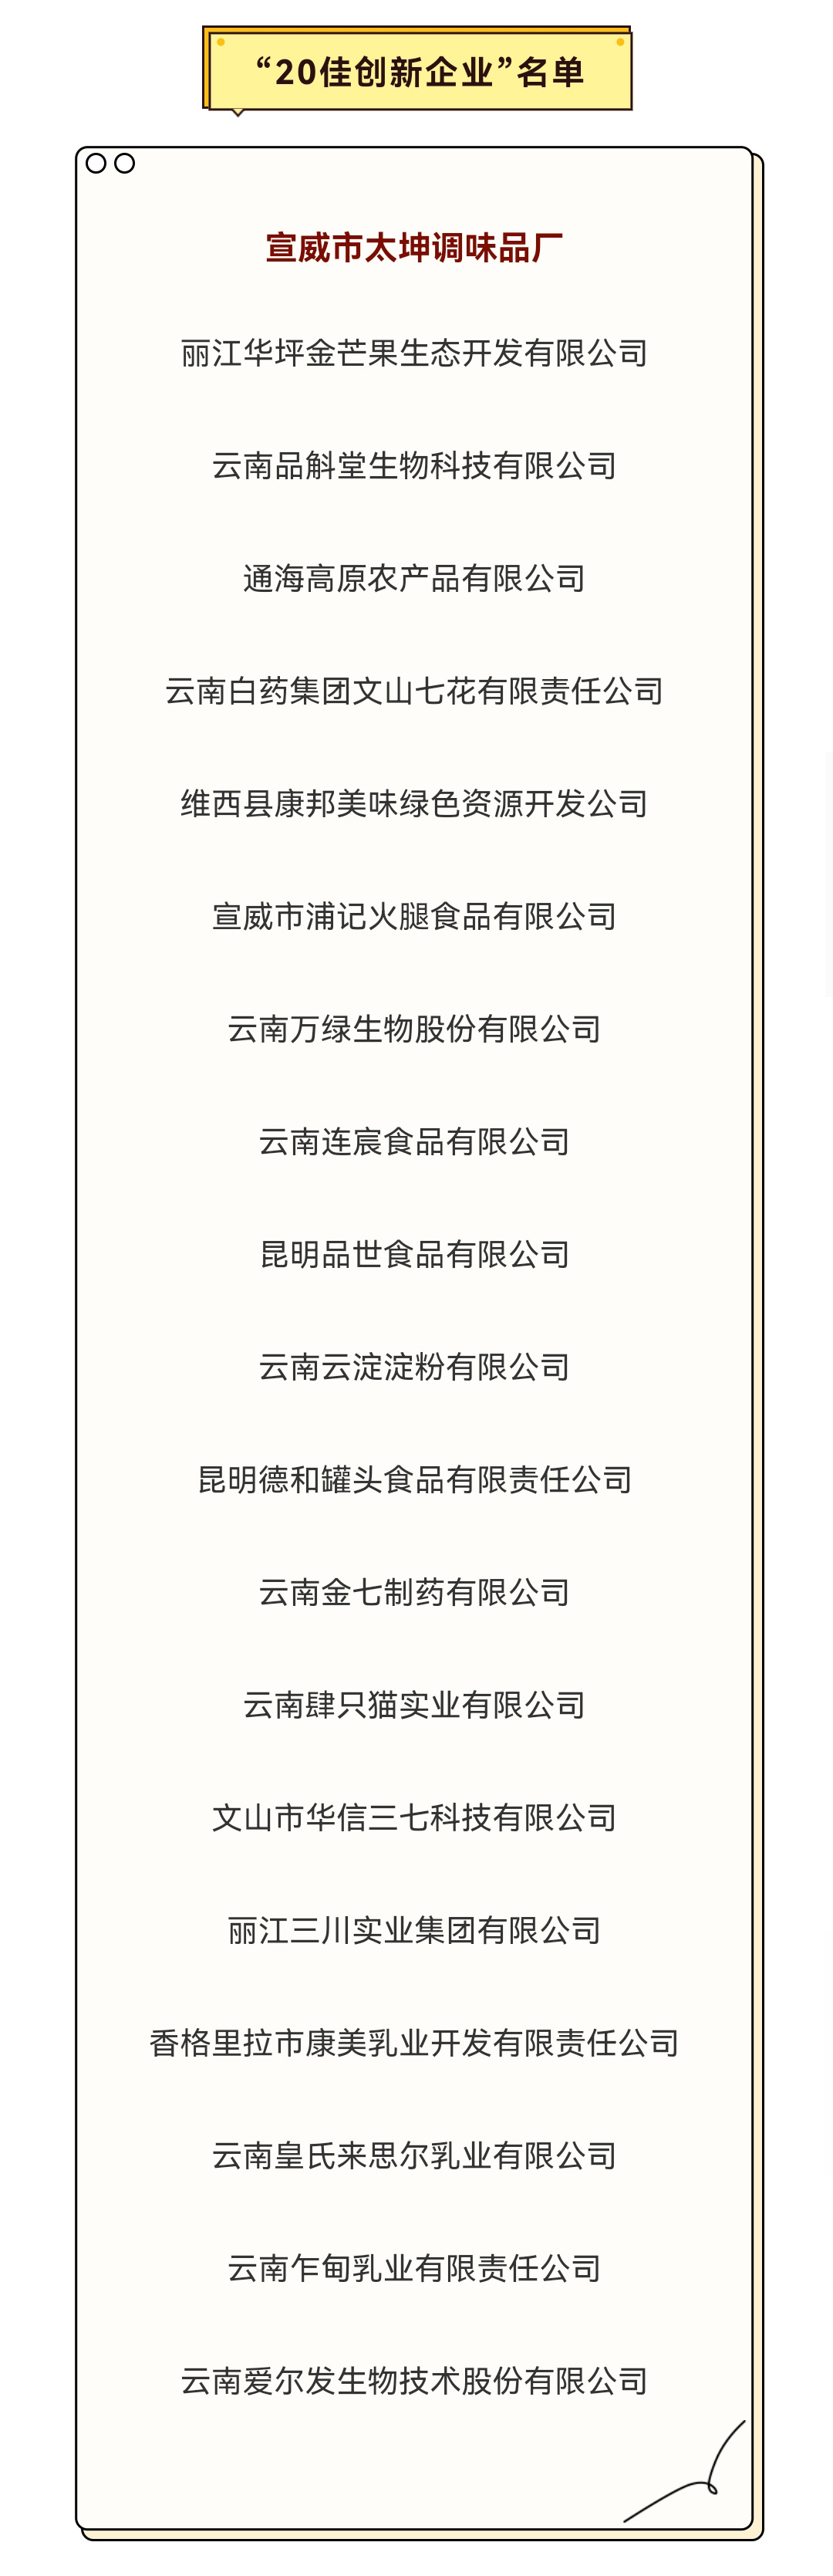 宣威市太坤调味品厂荣获2021年云南省绿色食品“20佳创新企业”_02.jpg